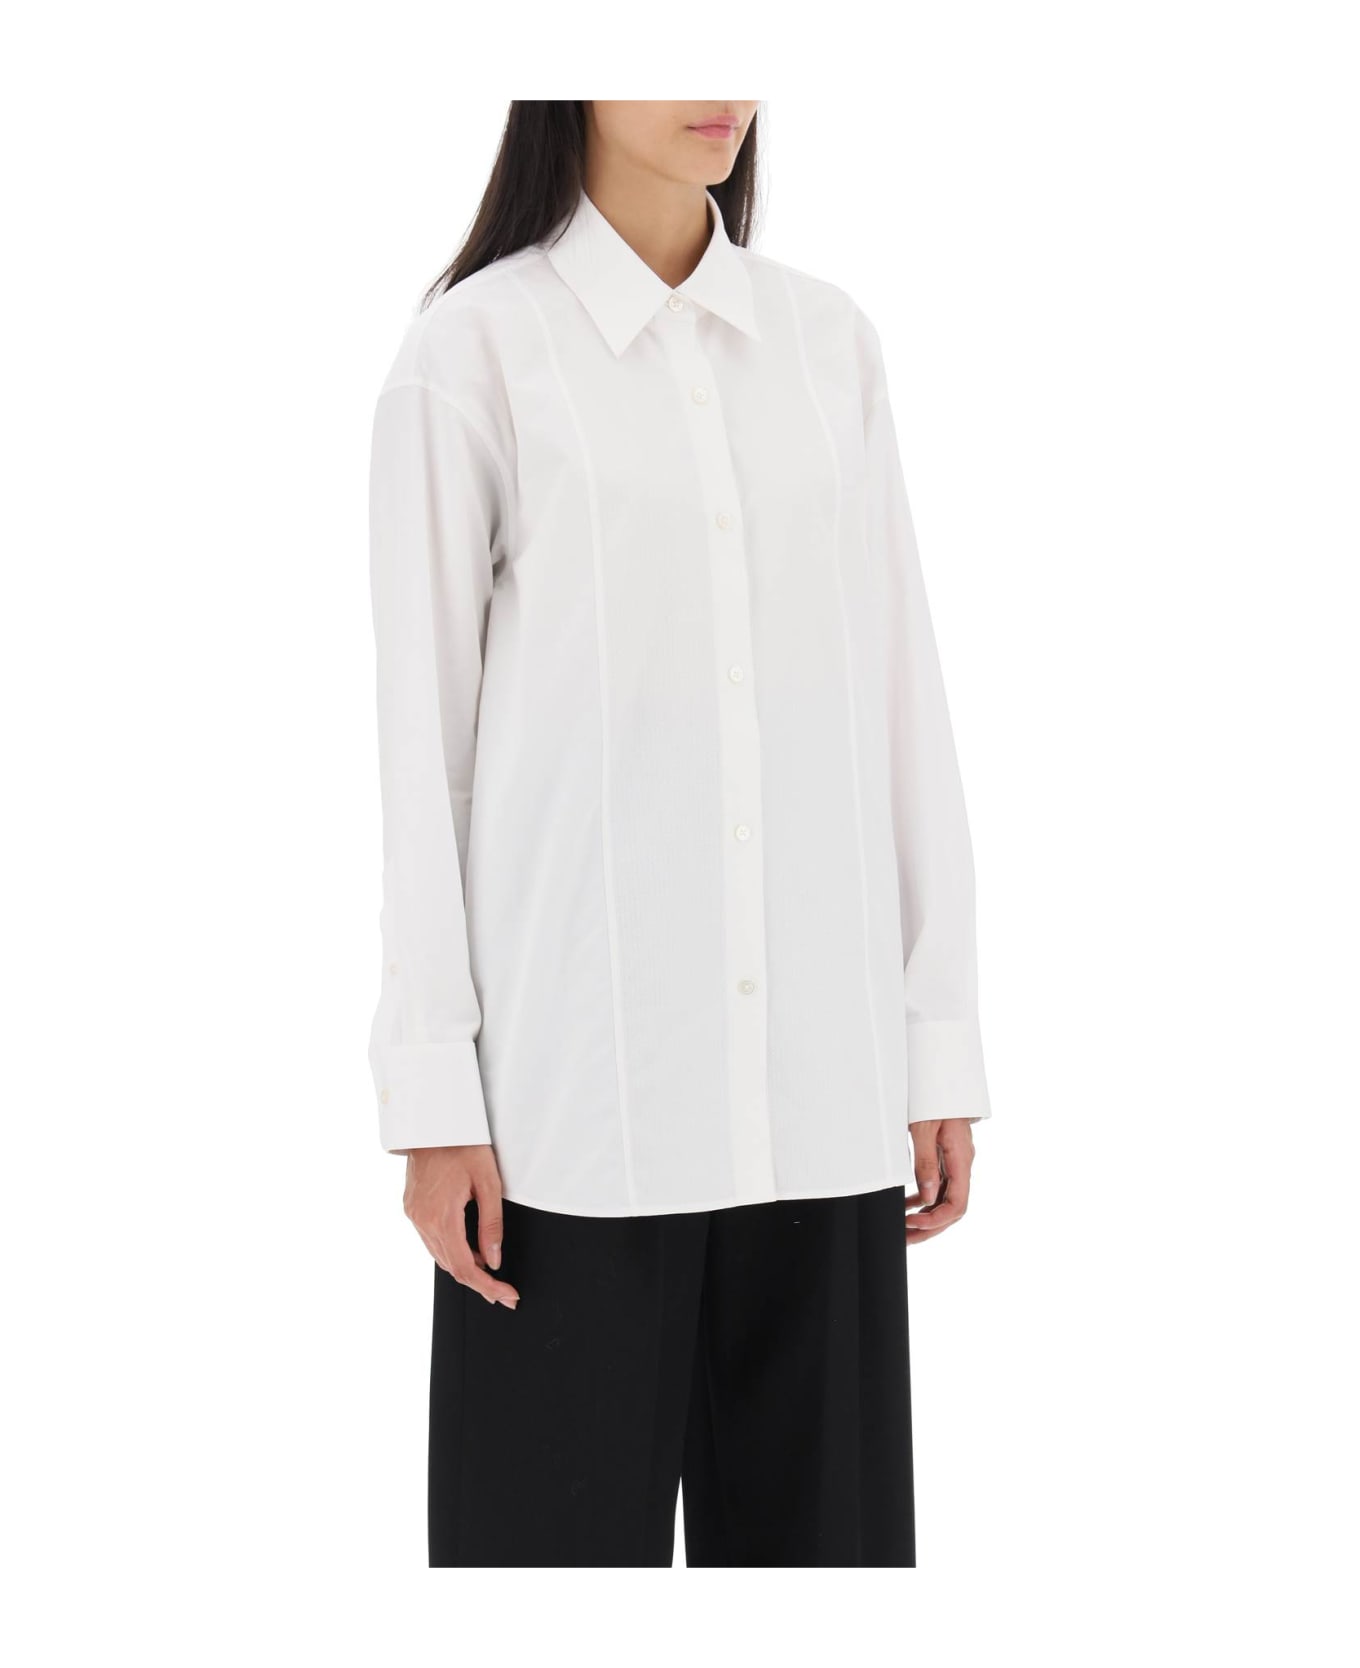 Alexander Wang Poplin Shirt With Rhinestones - WHITE (White)